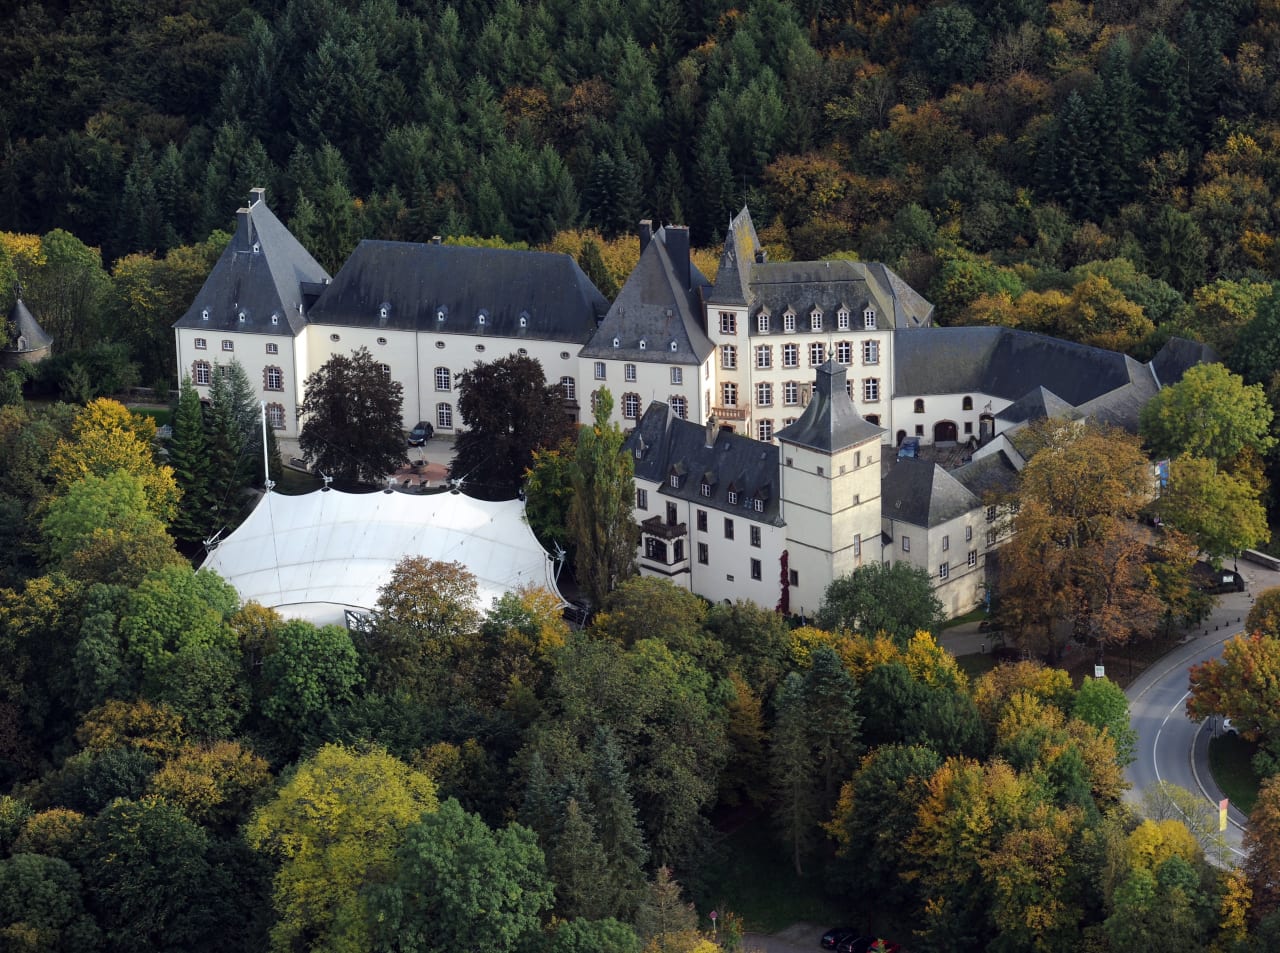 BBI Luxembourg ปริญญาโทสาขาการจัดการการบริการและการท่องเที่ยวระหว่างประเทศ